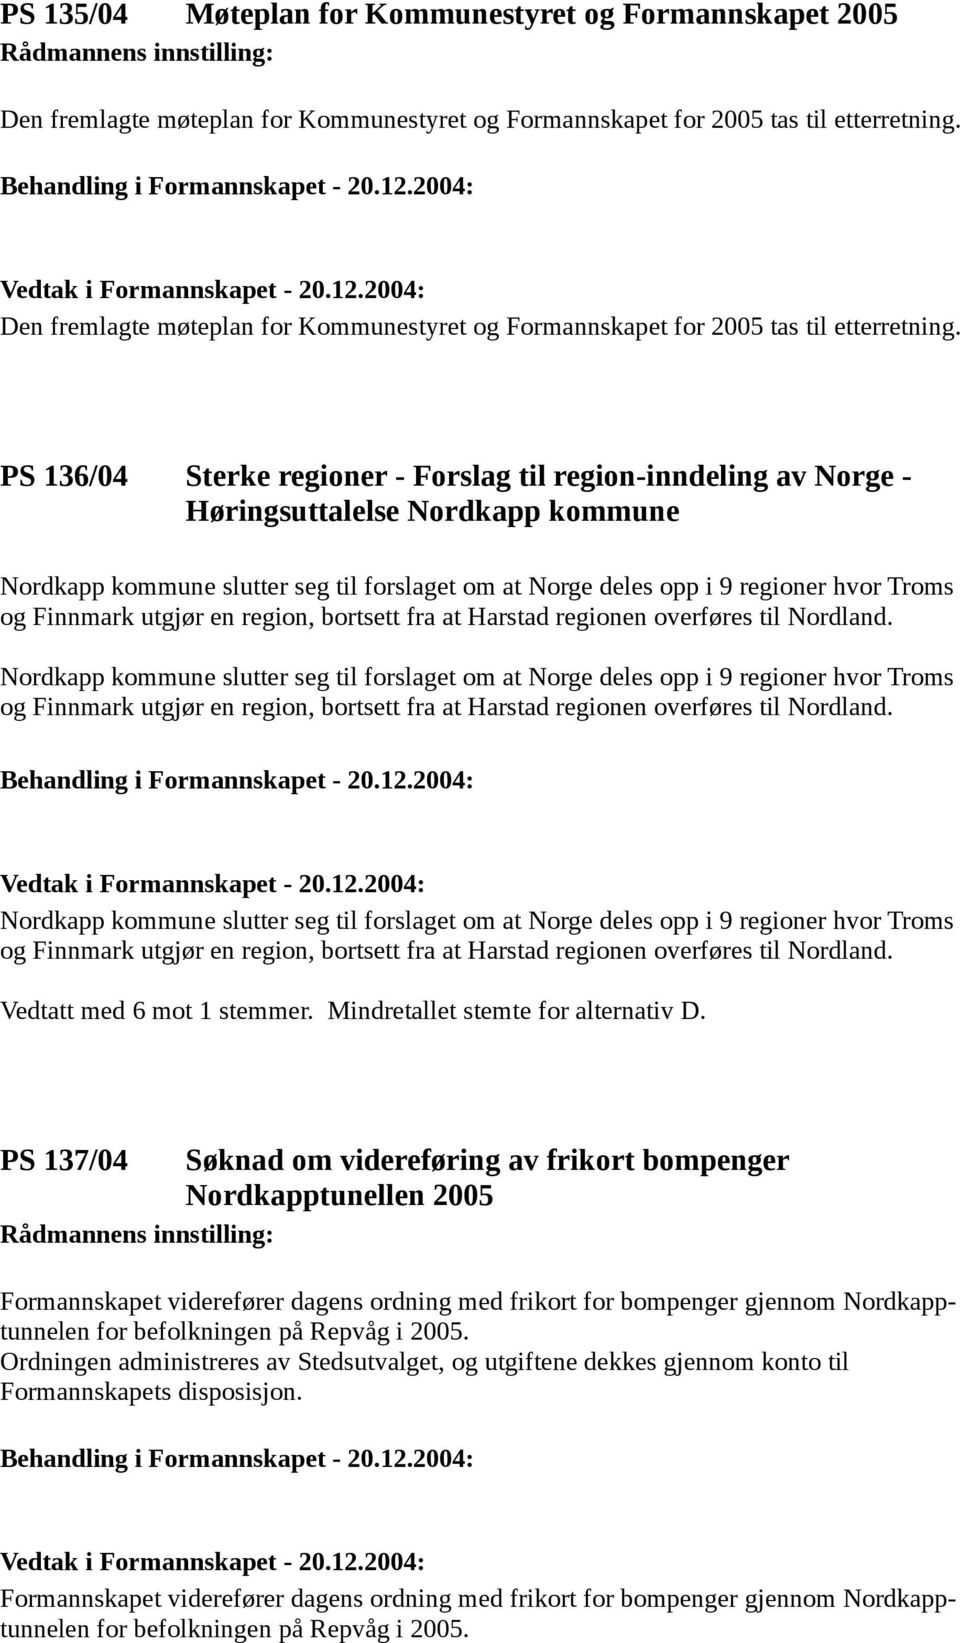 PS 136/04 Sterke regioner - Forslag til region-inndeling av Norge - Høringsuttalelse Nordkapp kommune Nordkapp kommune slutter seg til forslaget om at Norge deles opp i 9 regioner hvor Troms og